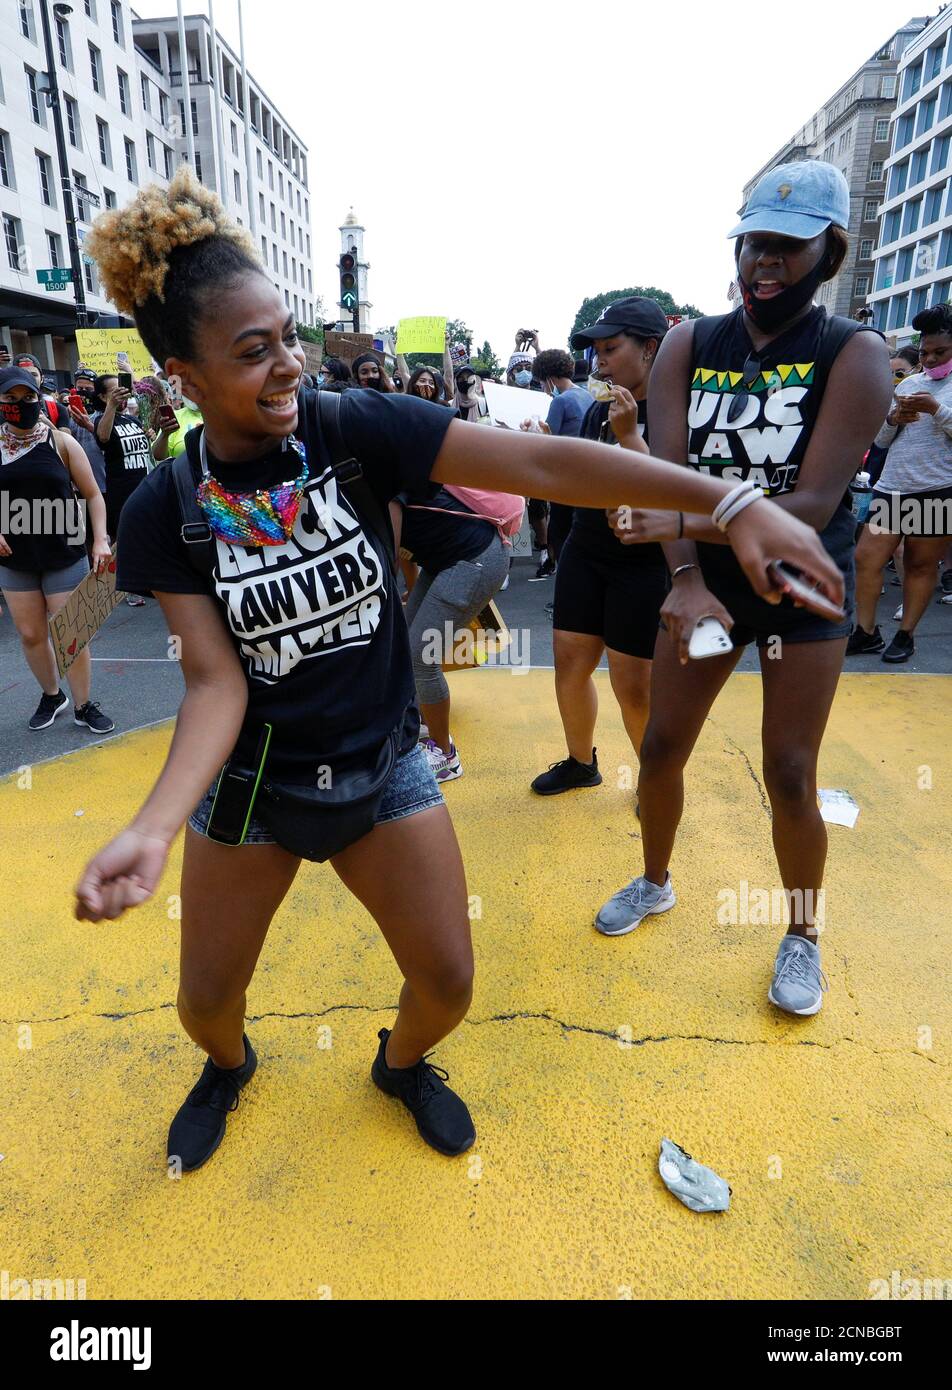 Les manifestants se joignent à une fête de danse célébrant les droits civils et la culture noire lorsqu'ils se réunissent au Black Lives Matter Plaza, près de la Maison Blanche, lors d'une manifestation contre les inégalités raciales à la suite de la mort de George Floyd, détenu par la police de Minneapolis, à Washington, le 6 juin 2020. REUTERS/Jim Bourg Banque D'Images